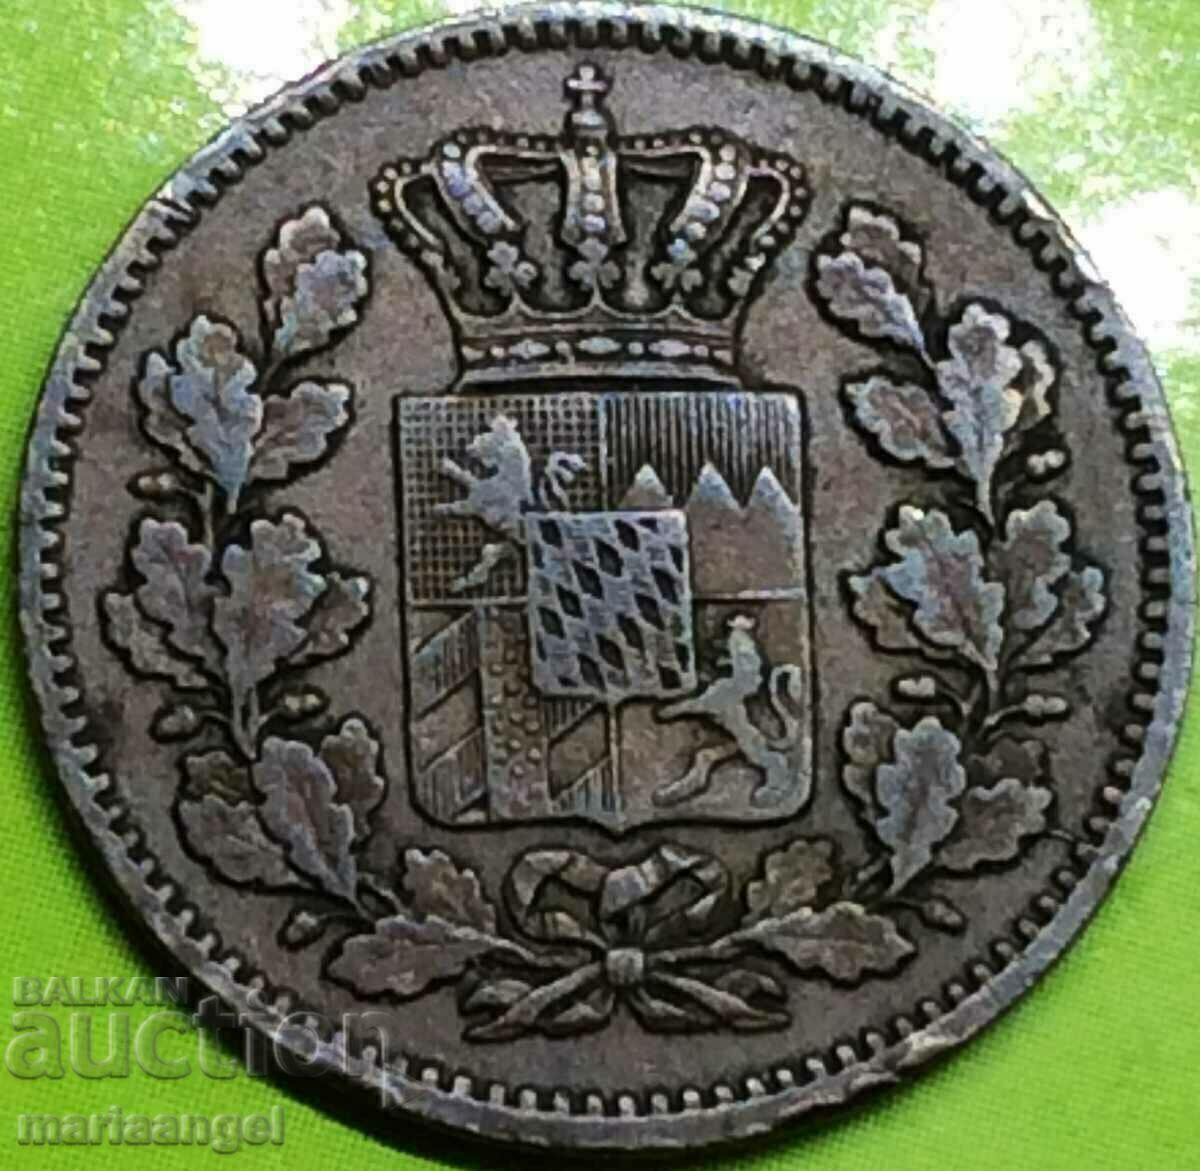 Bavaria 2 pfennig 1869 Germany copper